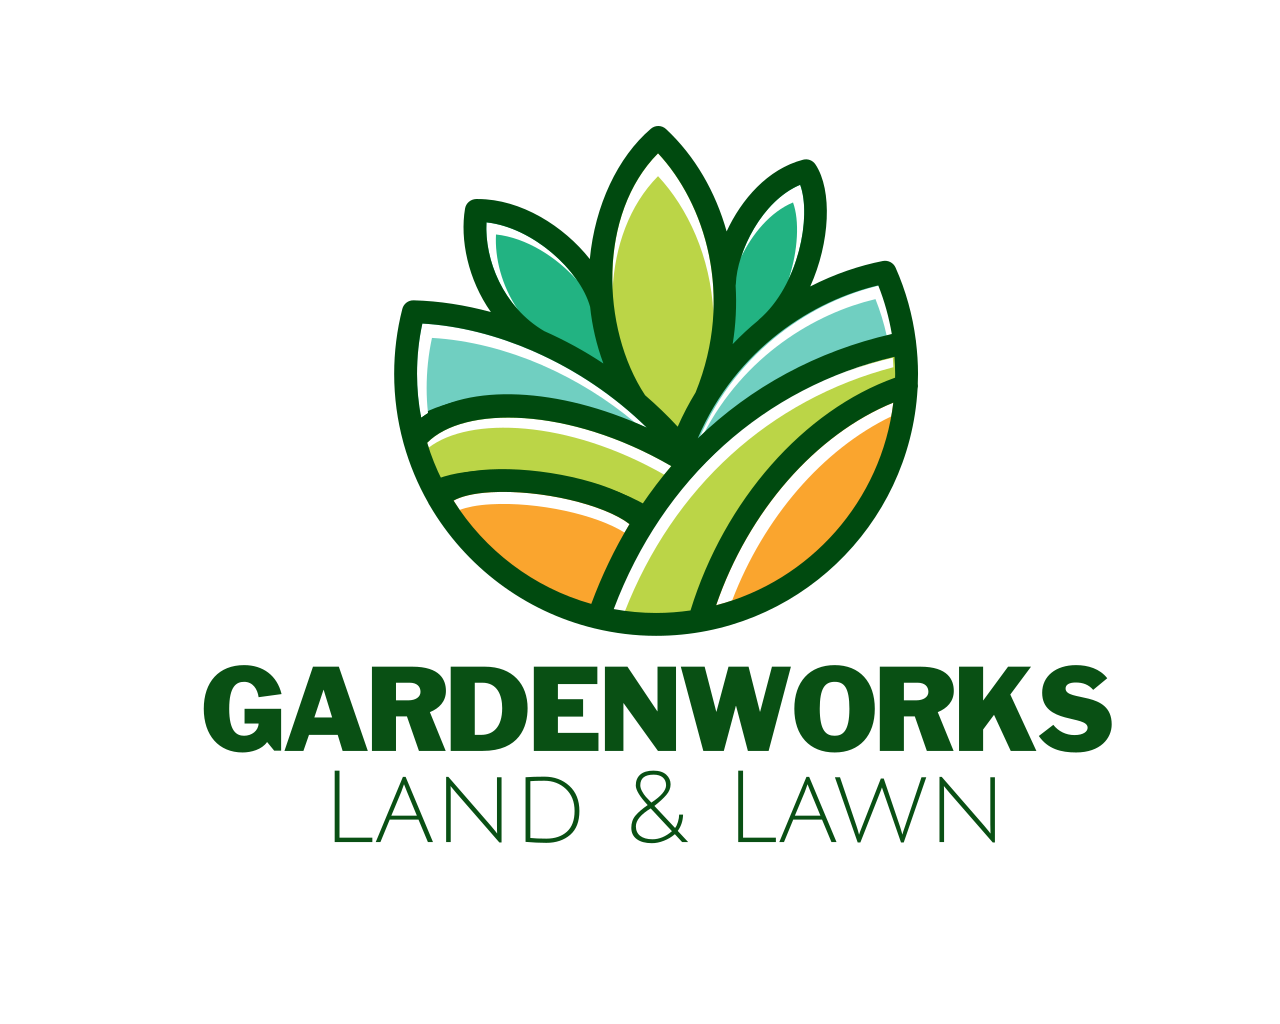 www.gardenworkschicago.com